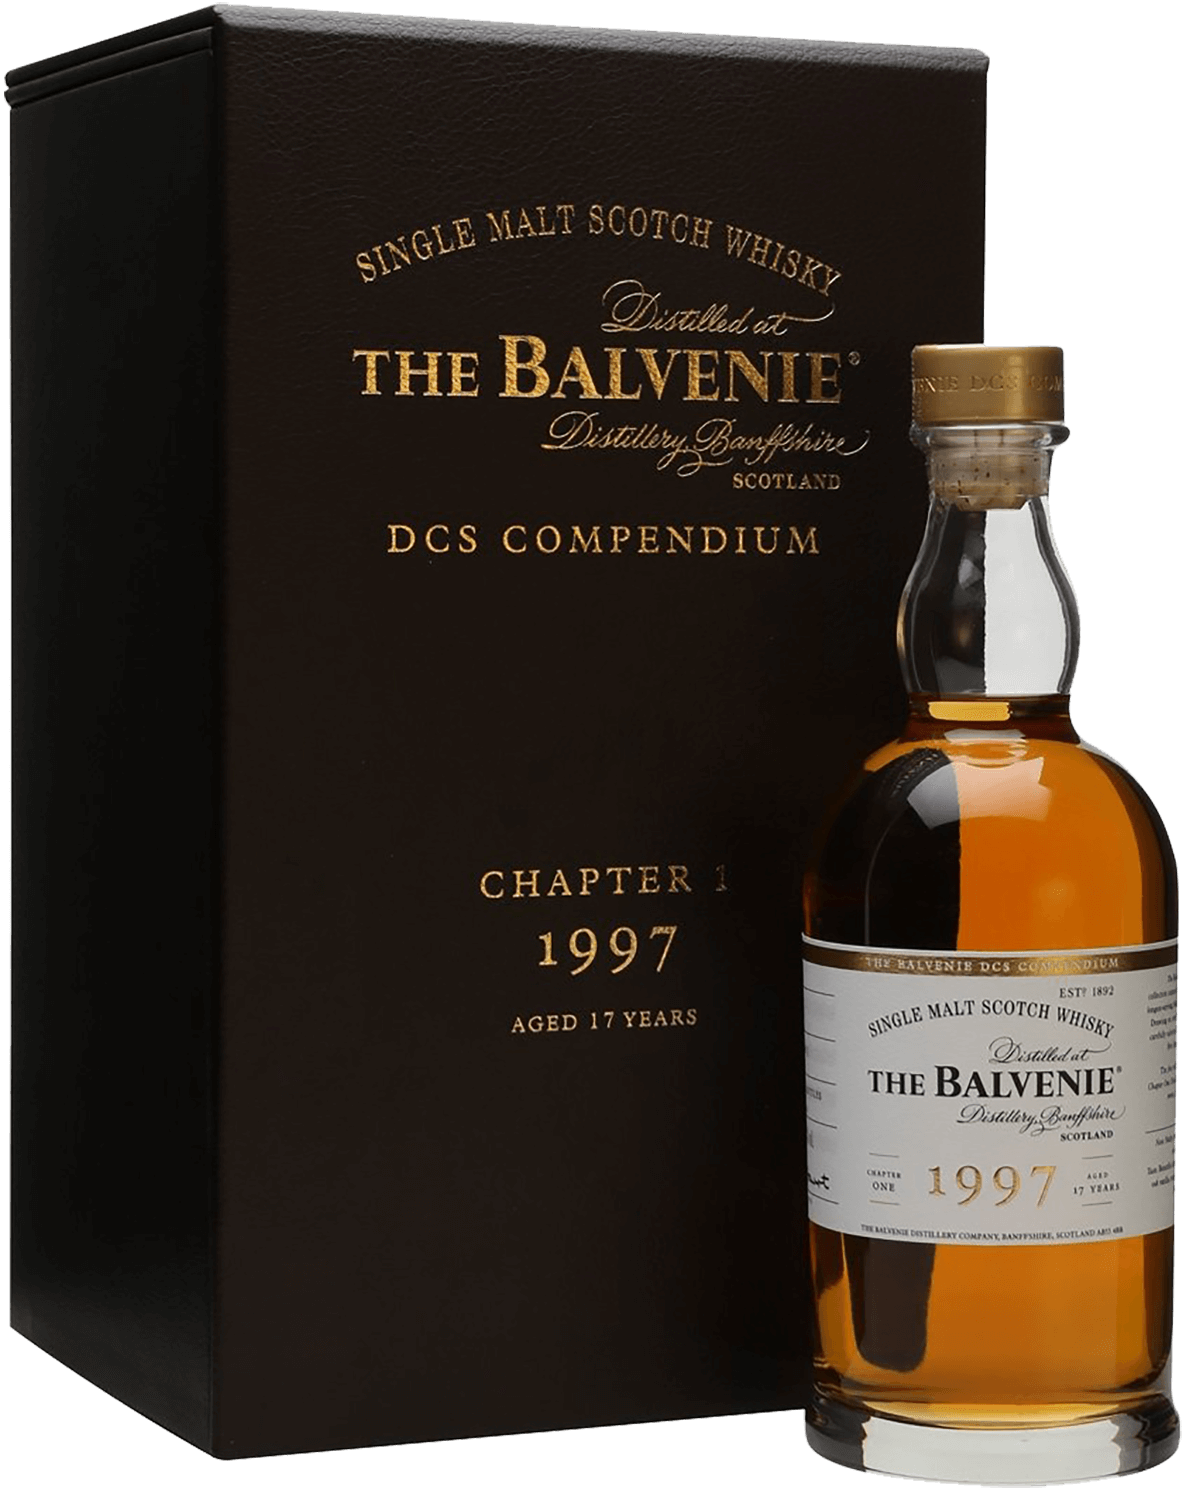 The Balvenie 1997 Single Malt Scotch Whisky (gift box) the balvenie peat week 14 y o single malt scotch whisky gift box